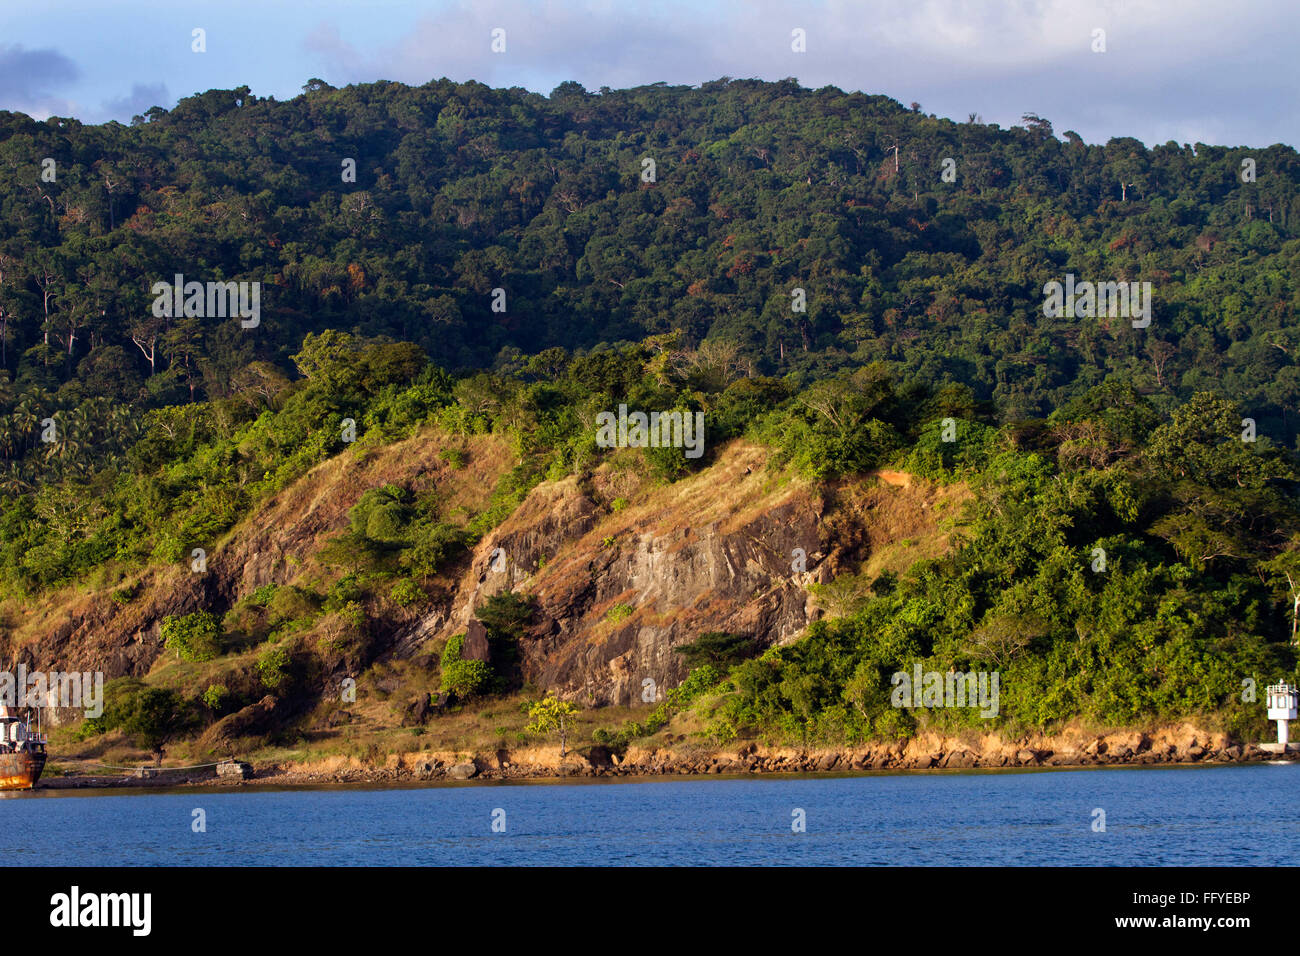 La déforestation paysage Port Blair Iles Andaman en Inde Asie Banque D'Images